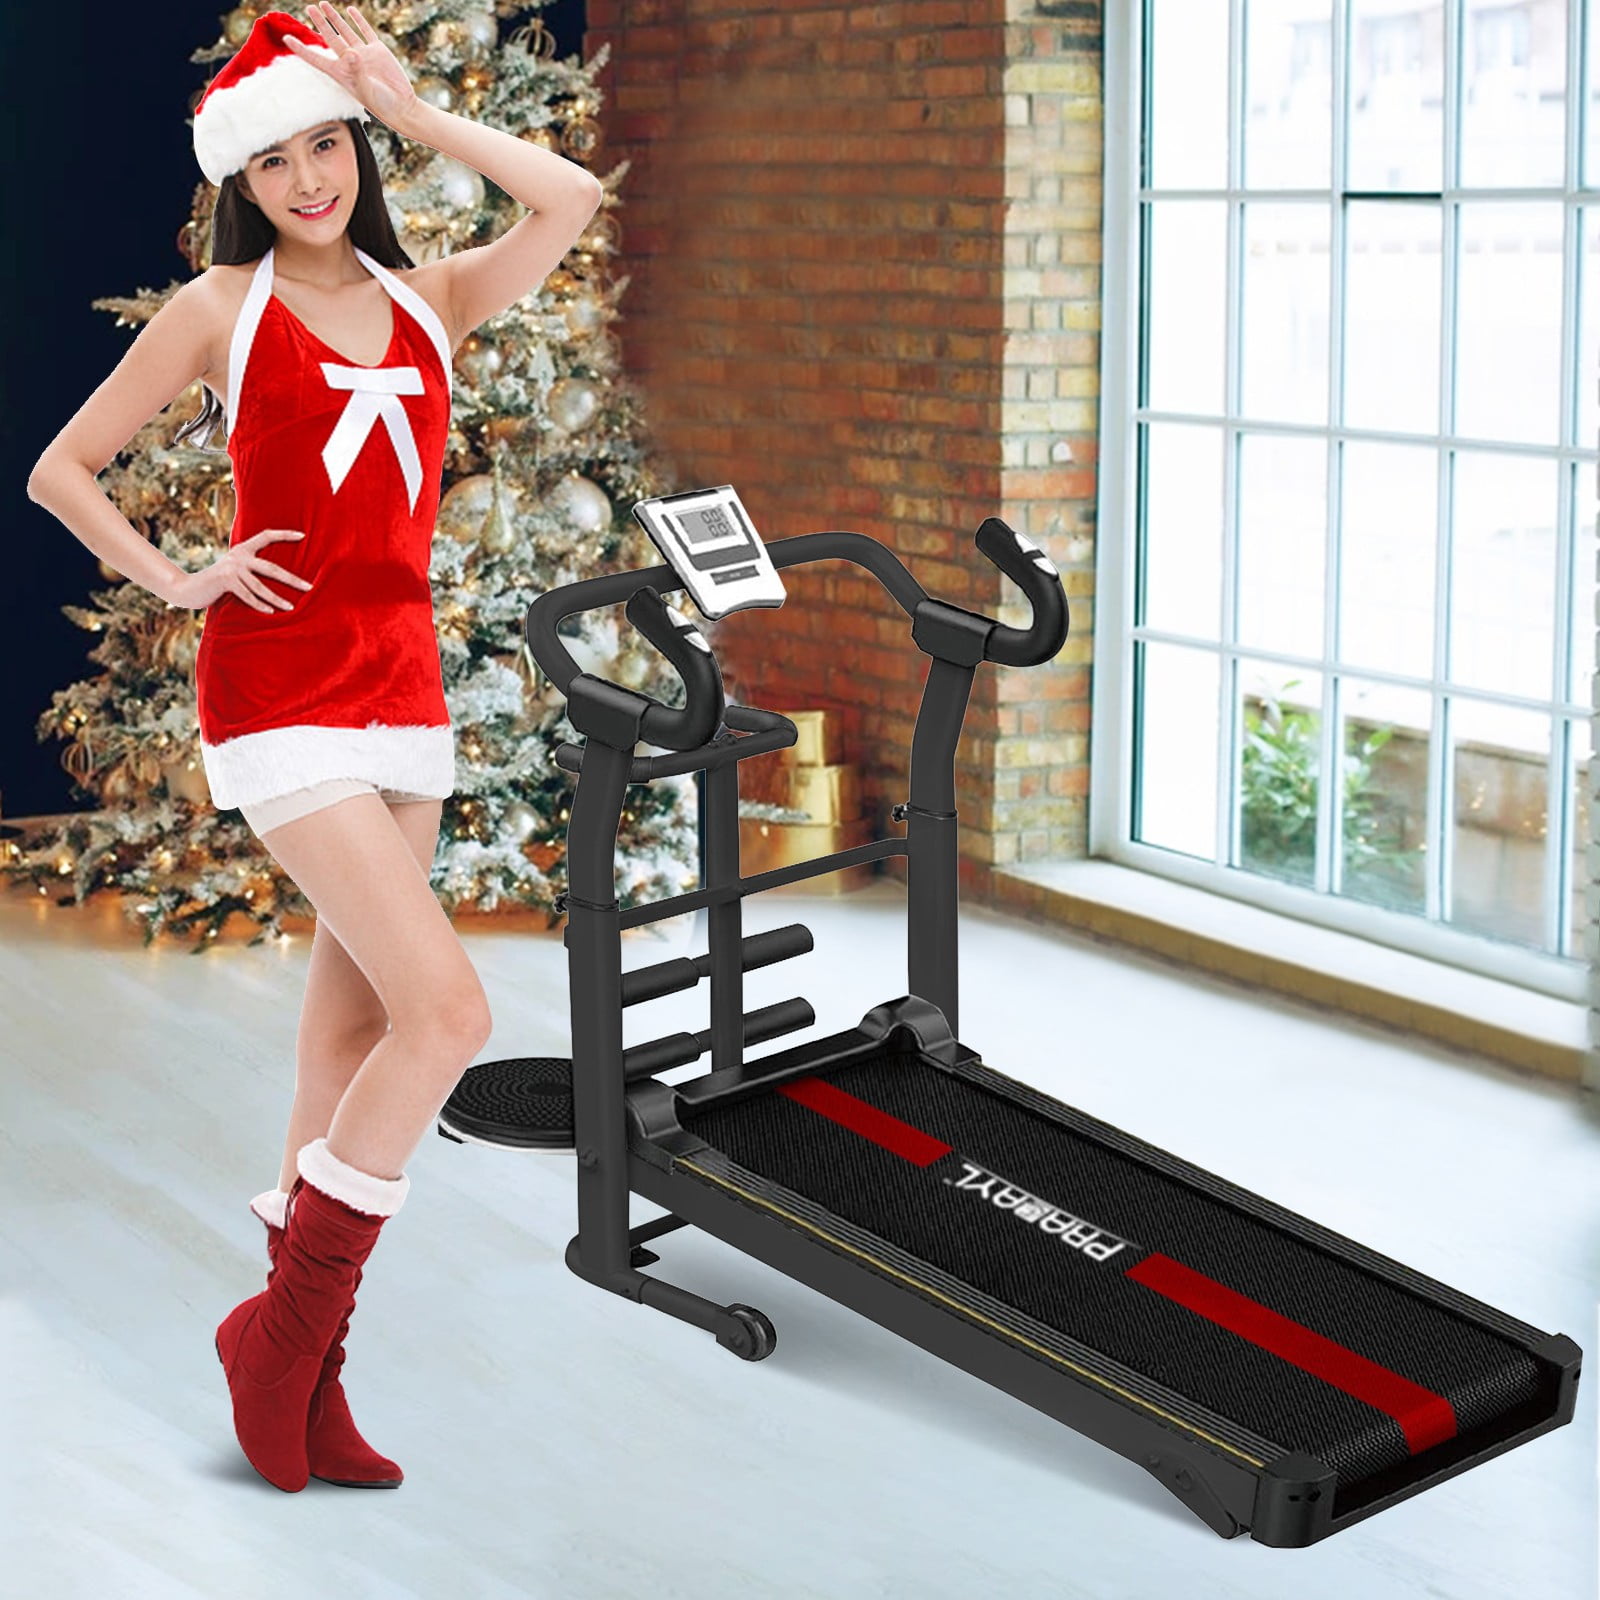 HealthRider models 297871 Treadmill Walking/Running Belt Less Friction 